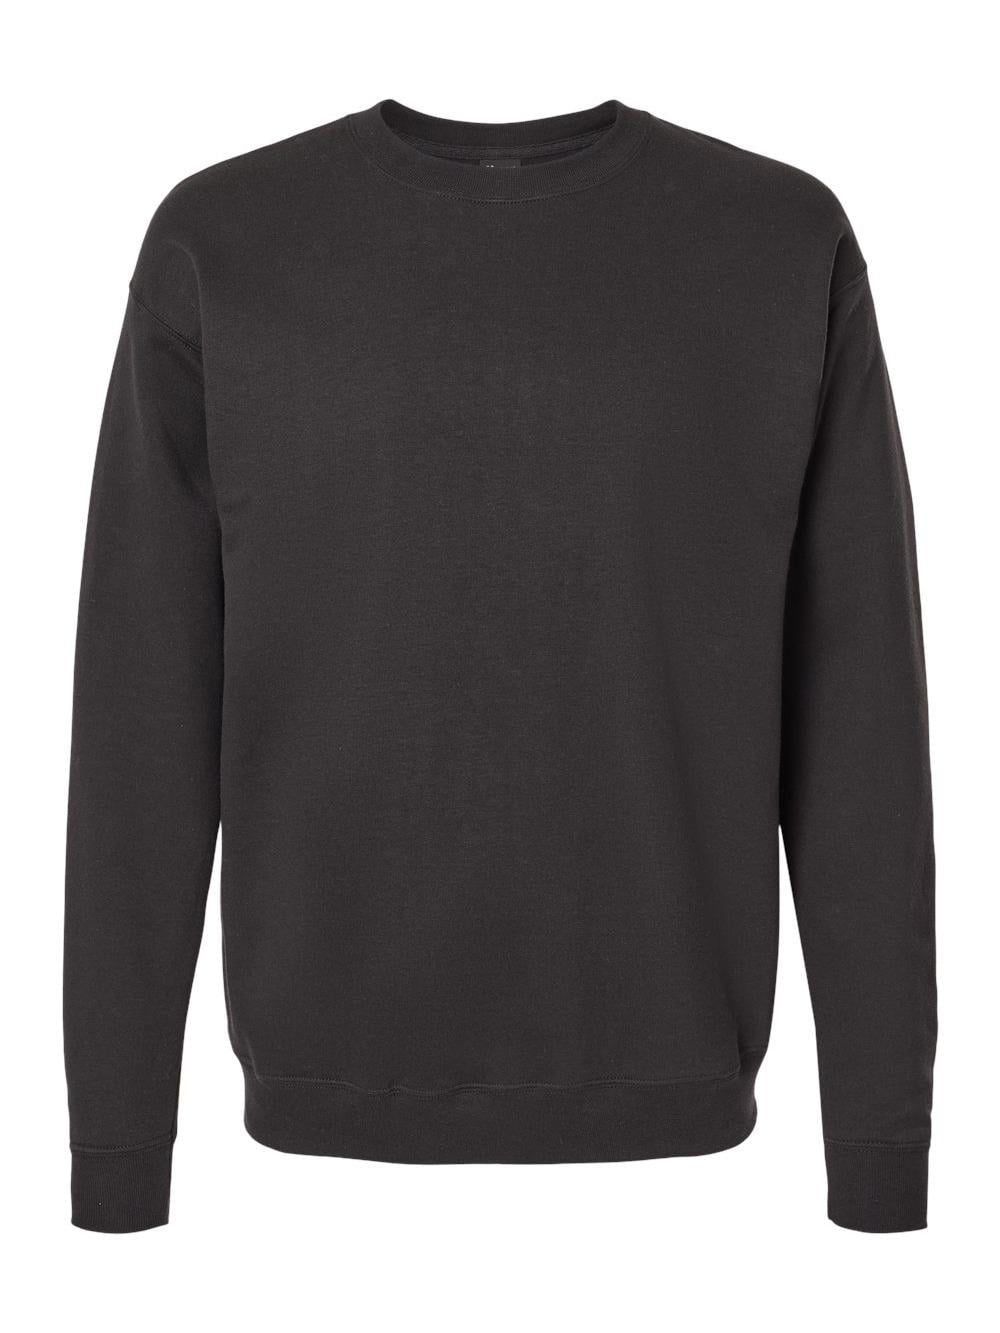 Hanes RS160 Adult Perfect Sweats Crewneck Sweatshirt - Walmart.com